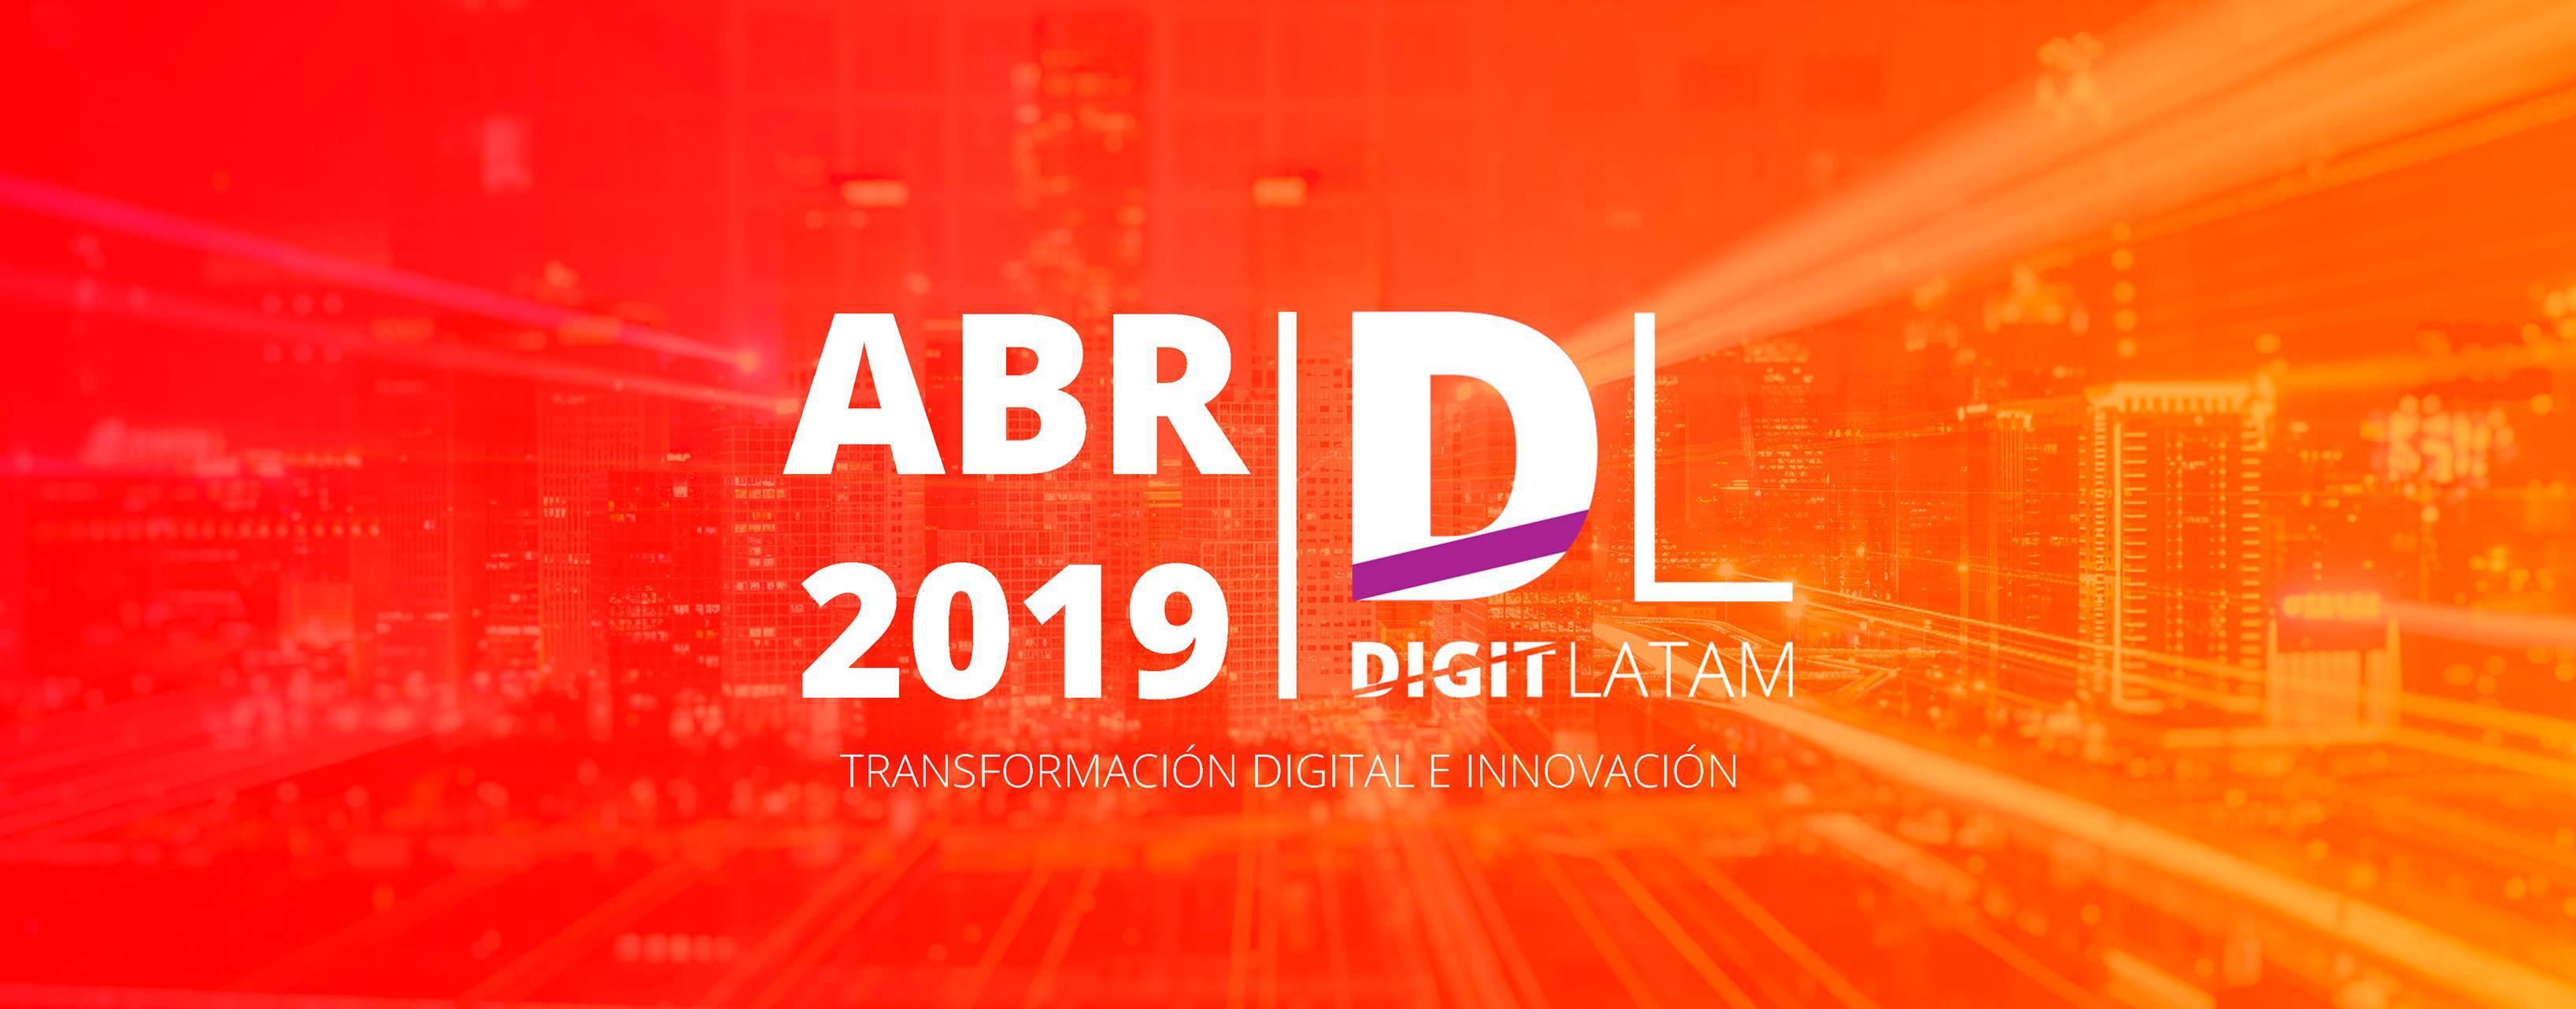 Se viene Digit Latam: el foro de transformación digital e innovación